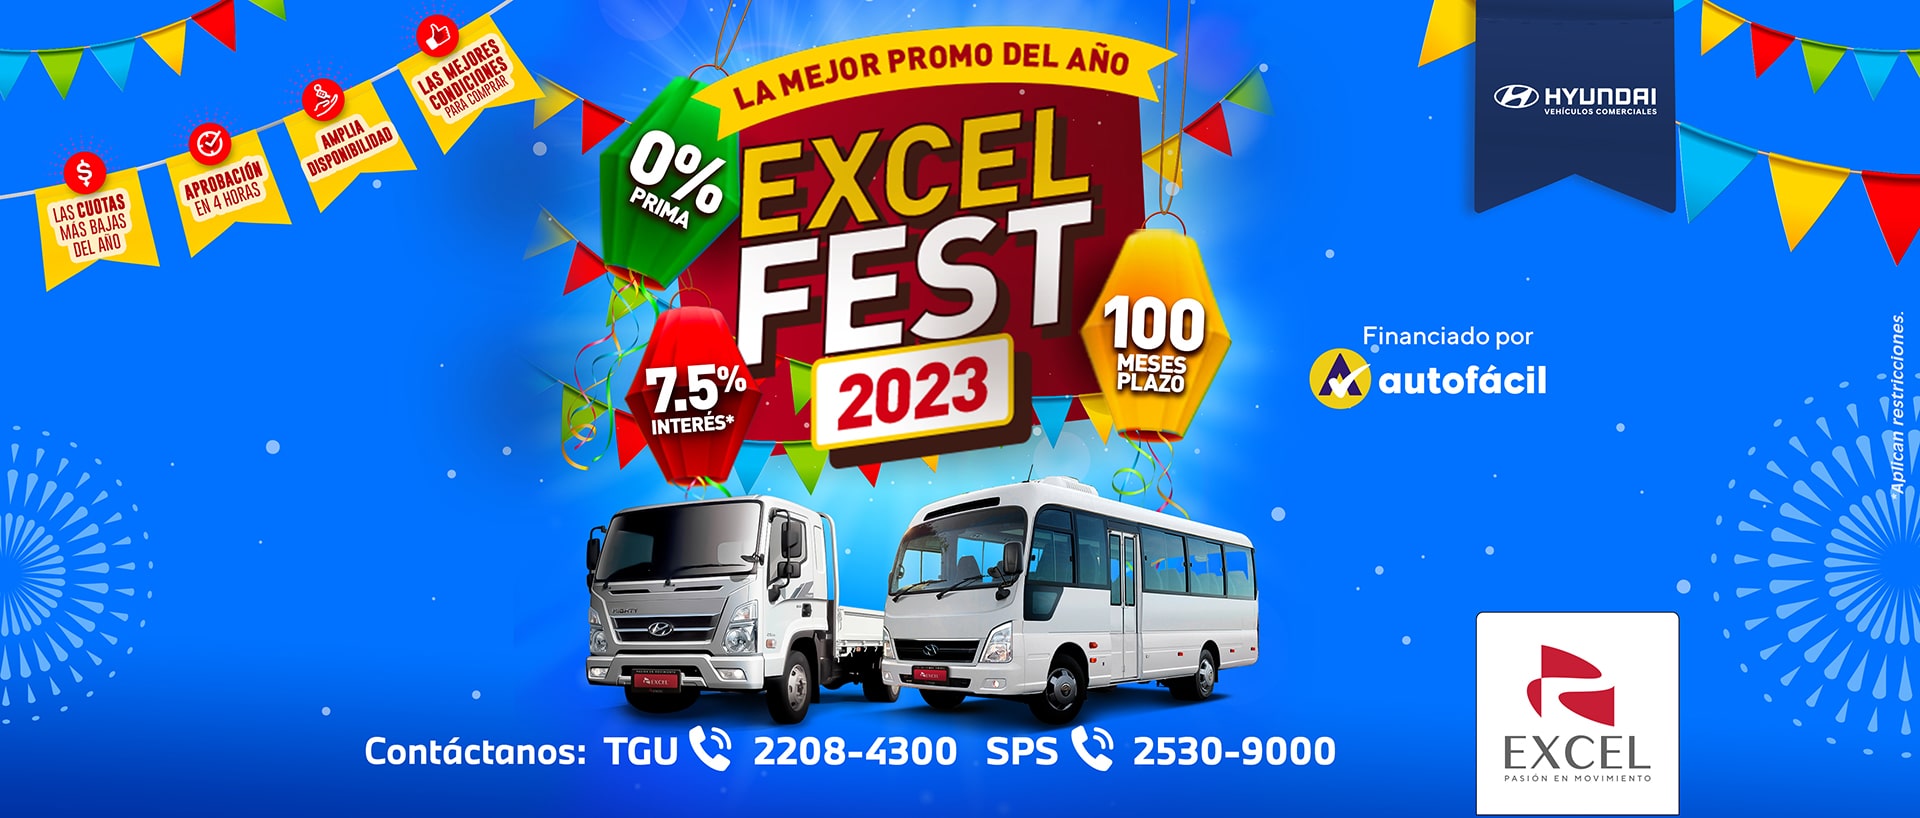 Excel Fest 2023 Hyundai Comercial Honduras Cover